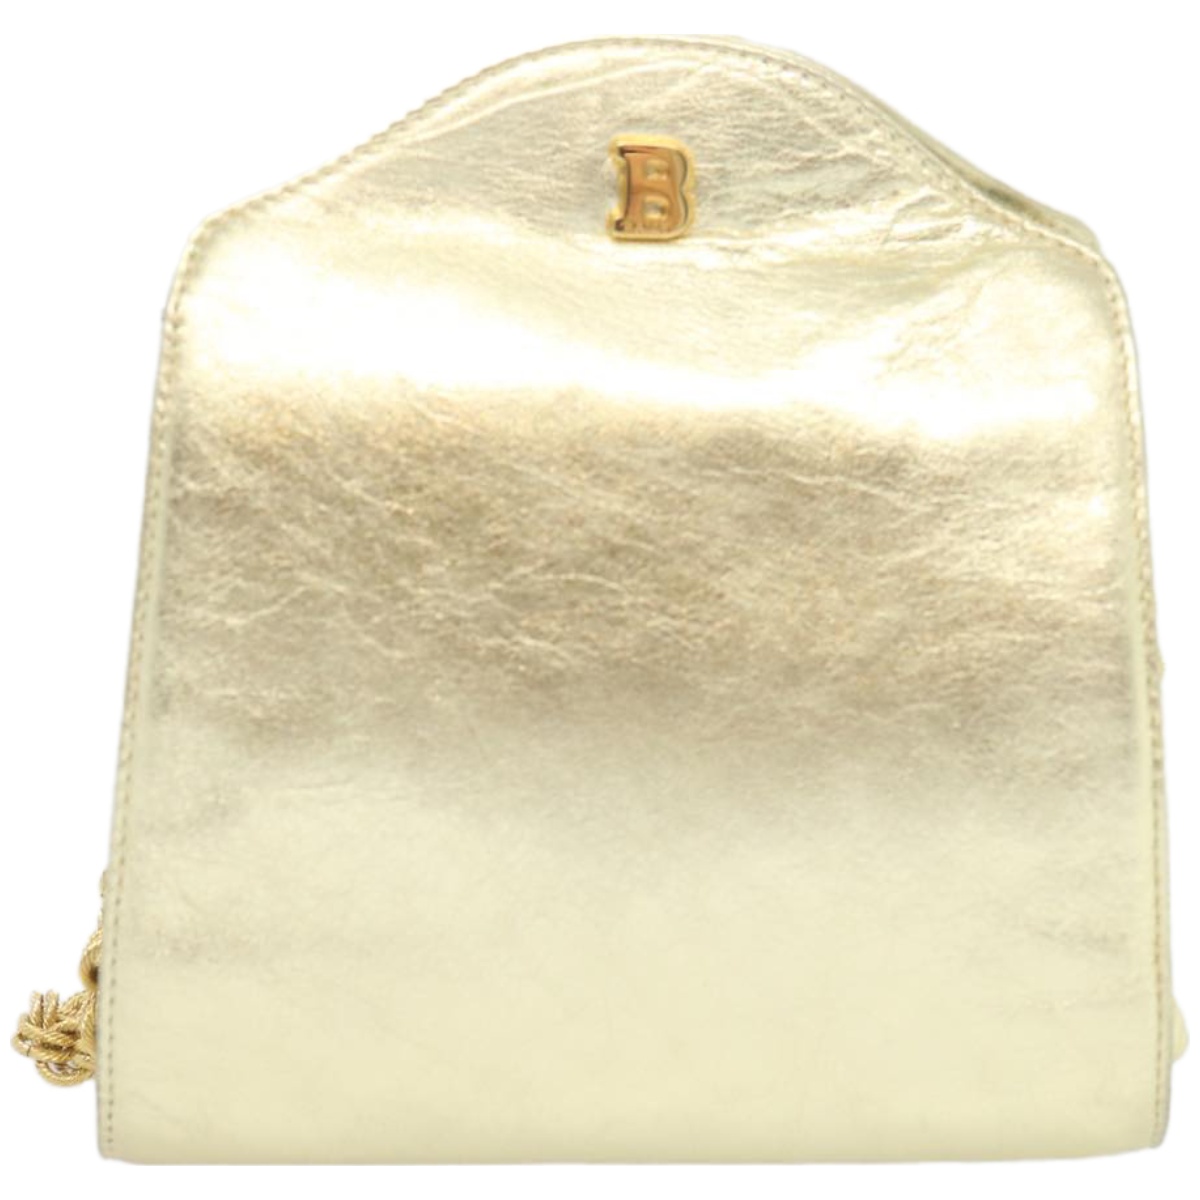 Leather Shoulder Bag with Dust Bag - Elegant and Timeless Design